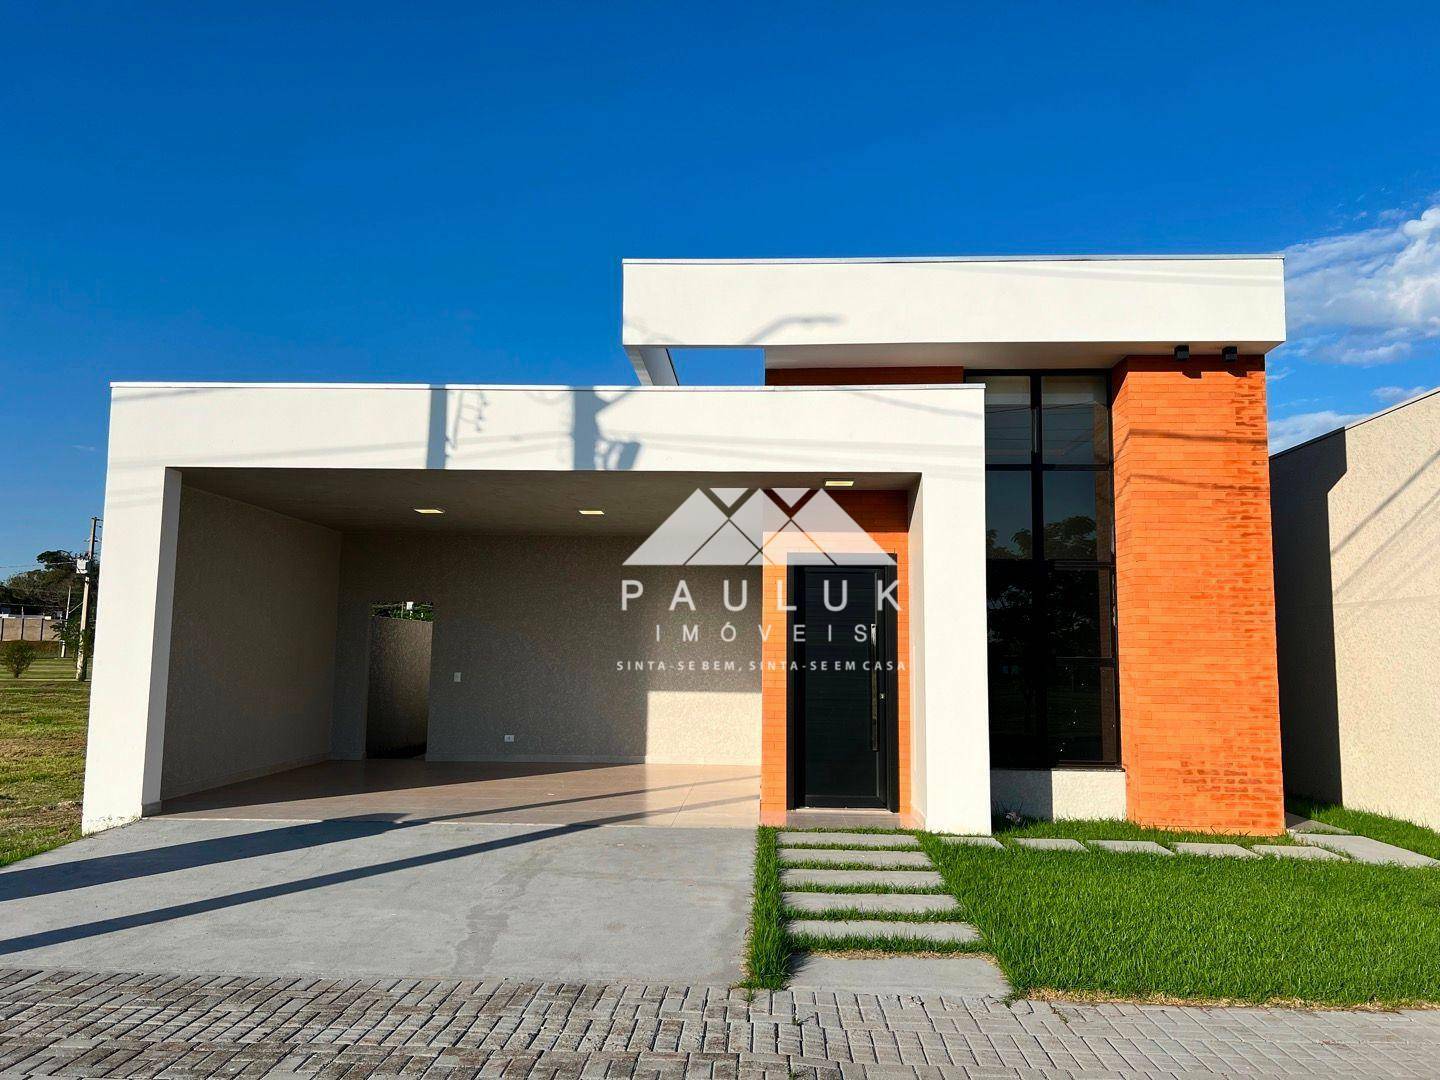 Casa com 3 Dormitórios, Sendo 1 Suíte, à Venda, 147 M² Por R$ 800.000 - Condomínio Residencial Iguaç | PAULUK IMÓVEIS | Portal OBusca